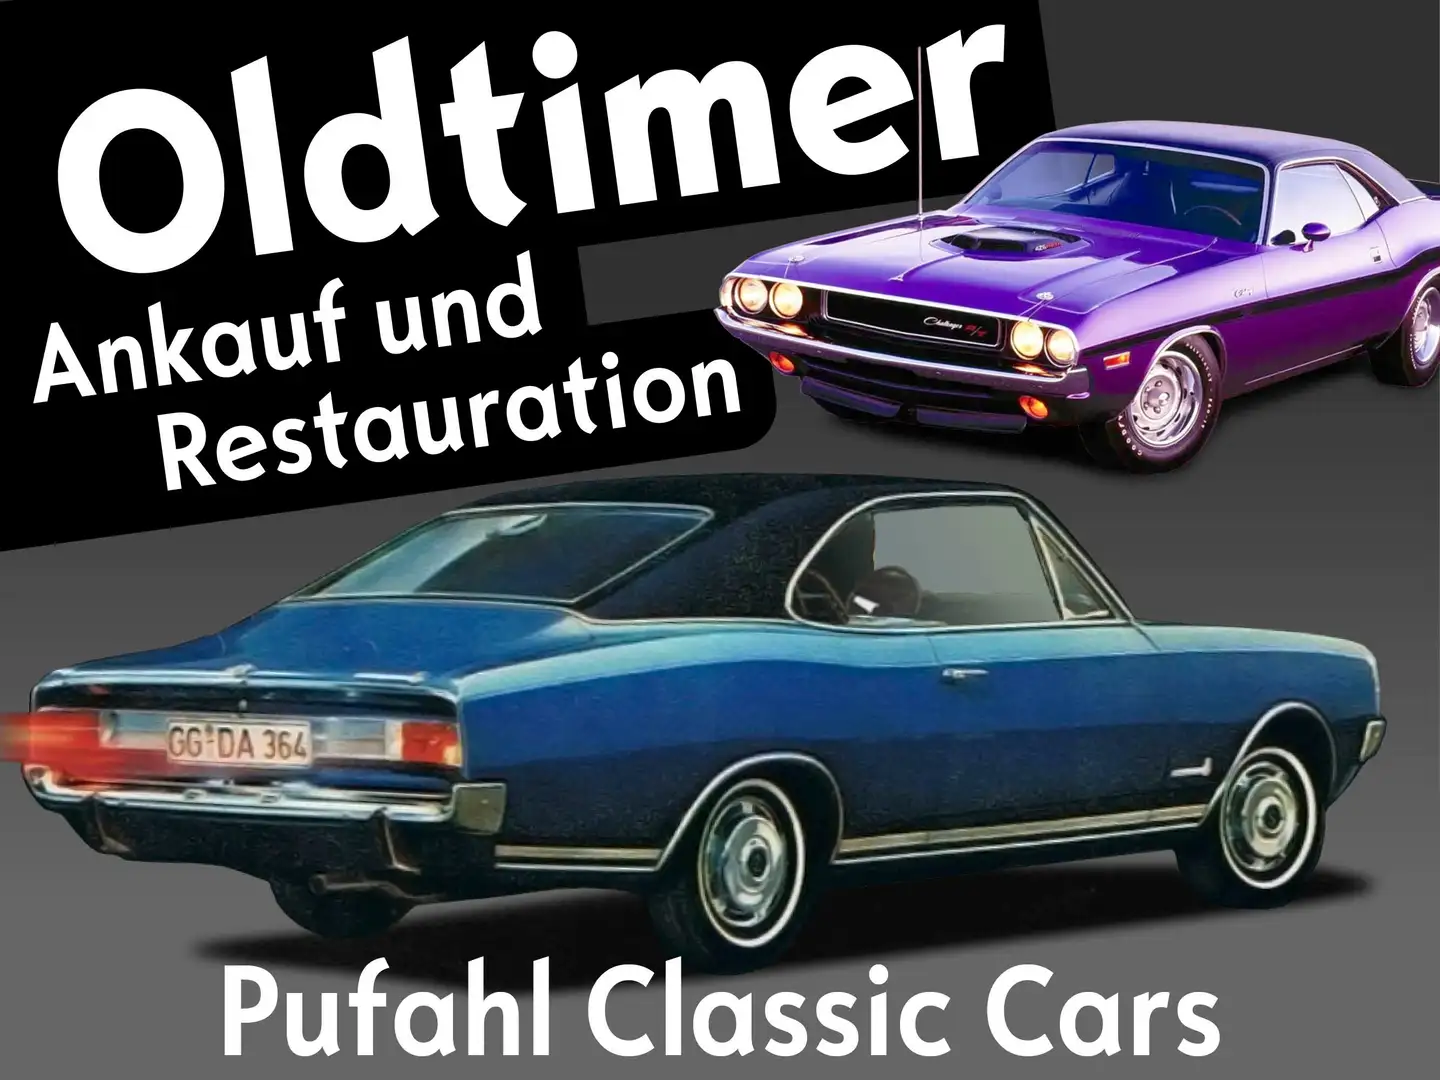 Pontiac Firebird Pufahl Classic Cars Ankauf und Restauration Black - 1